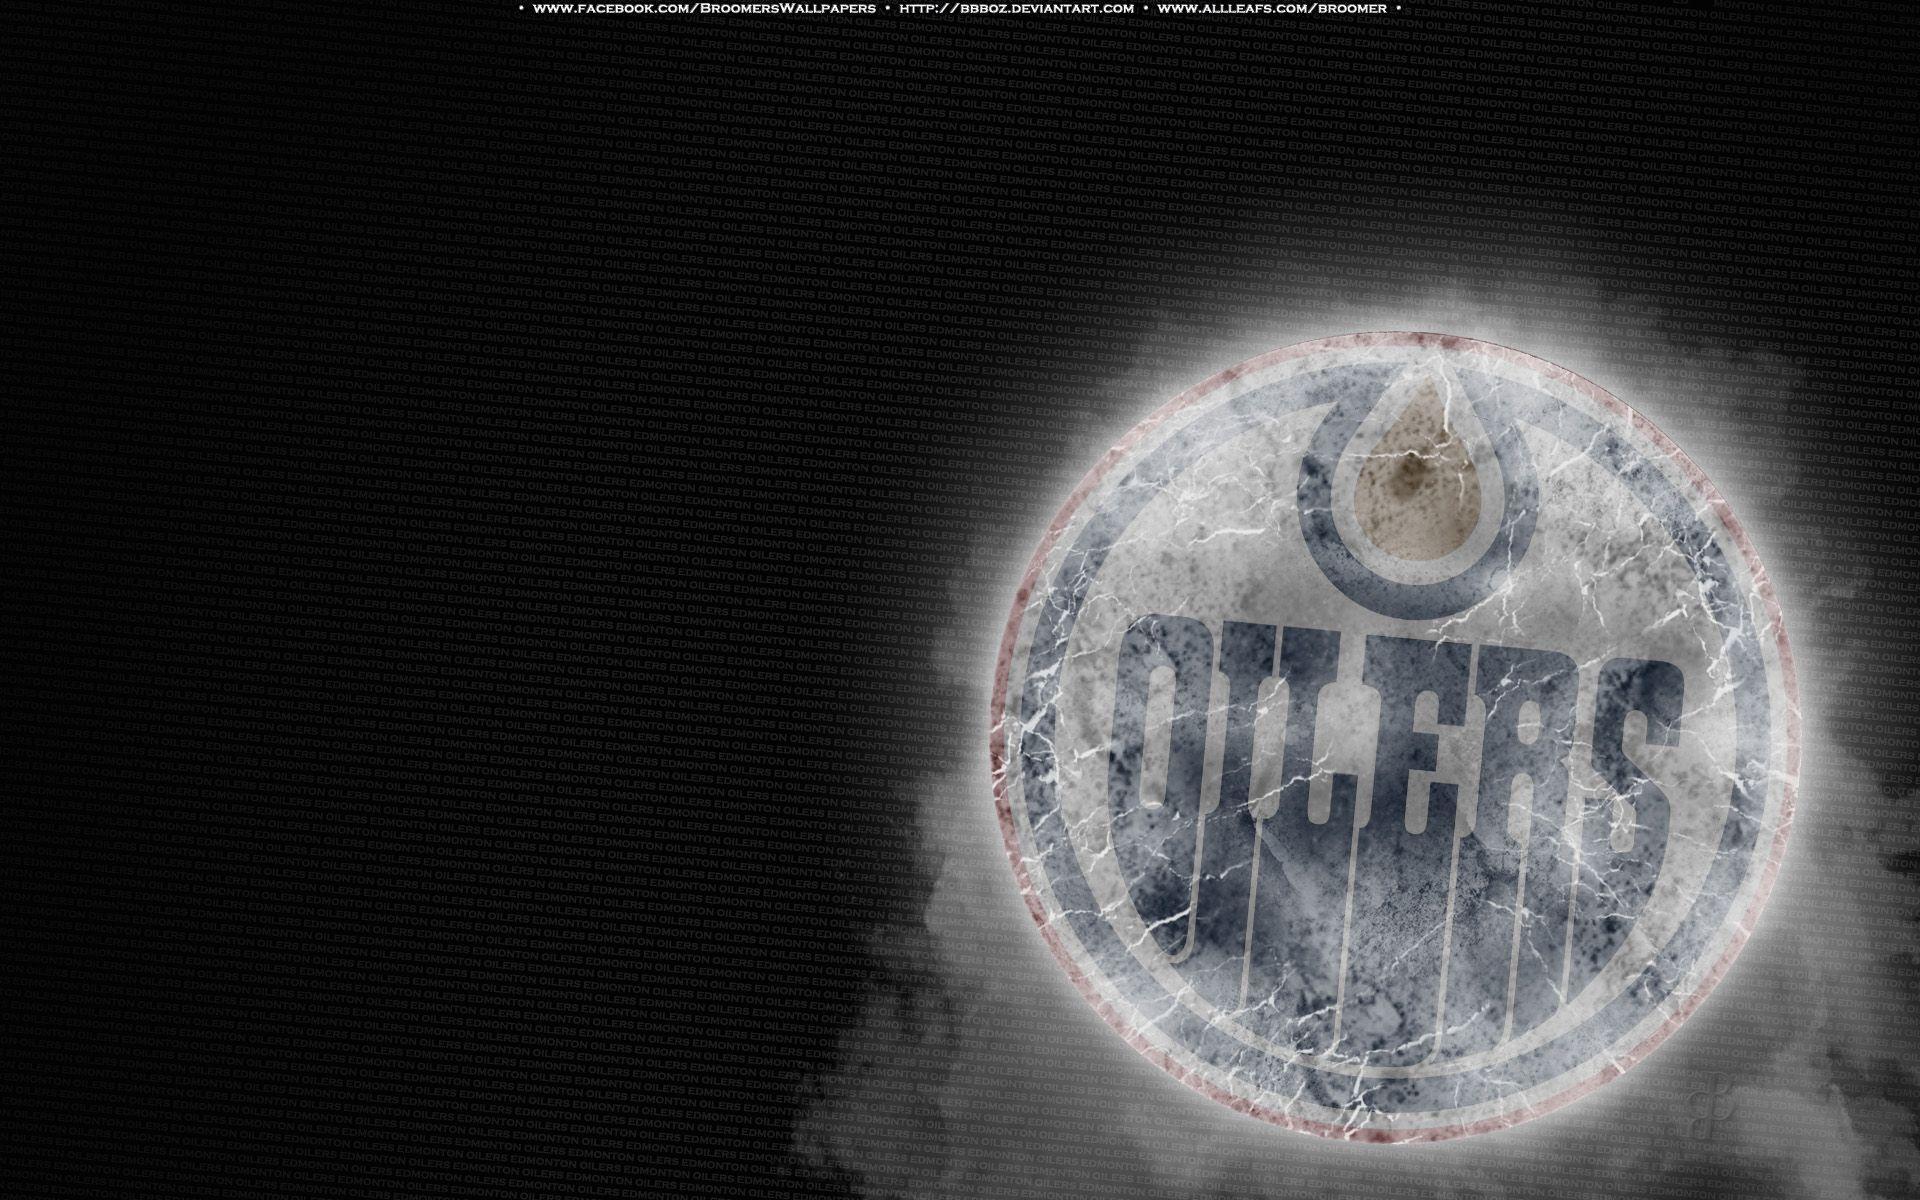 Edmonton Oilers wallpaper. Edmonton Oilers background